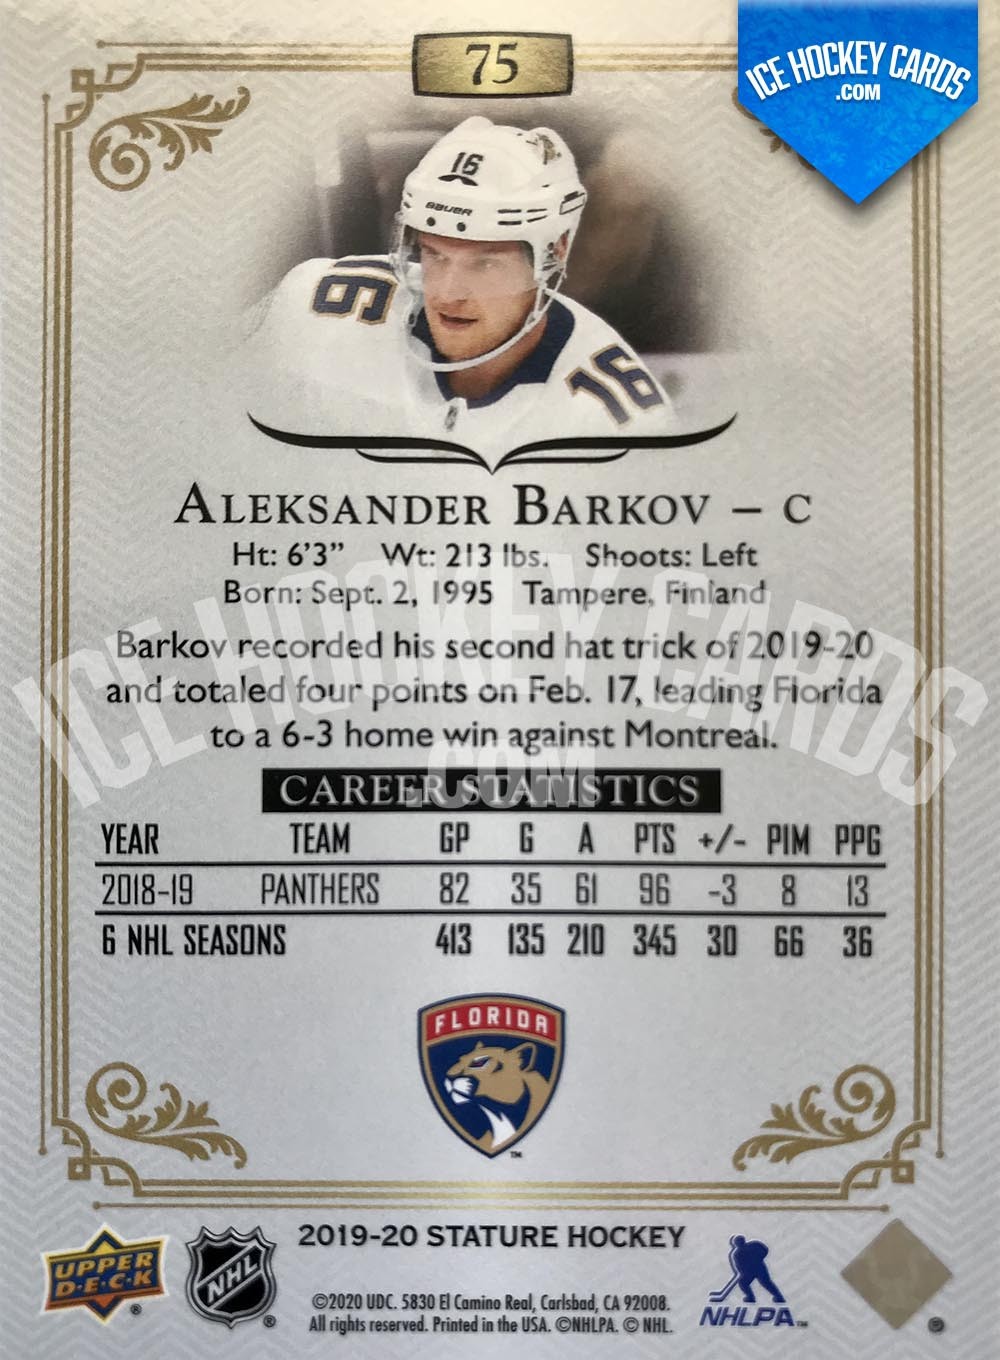 Upper Deck - Stature 2019-20 - Aleksander Barkov Red Base Card # to 75 back